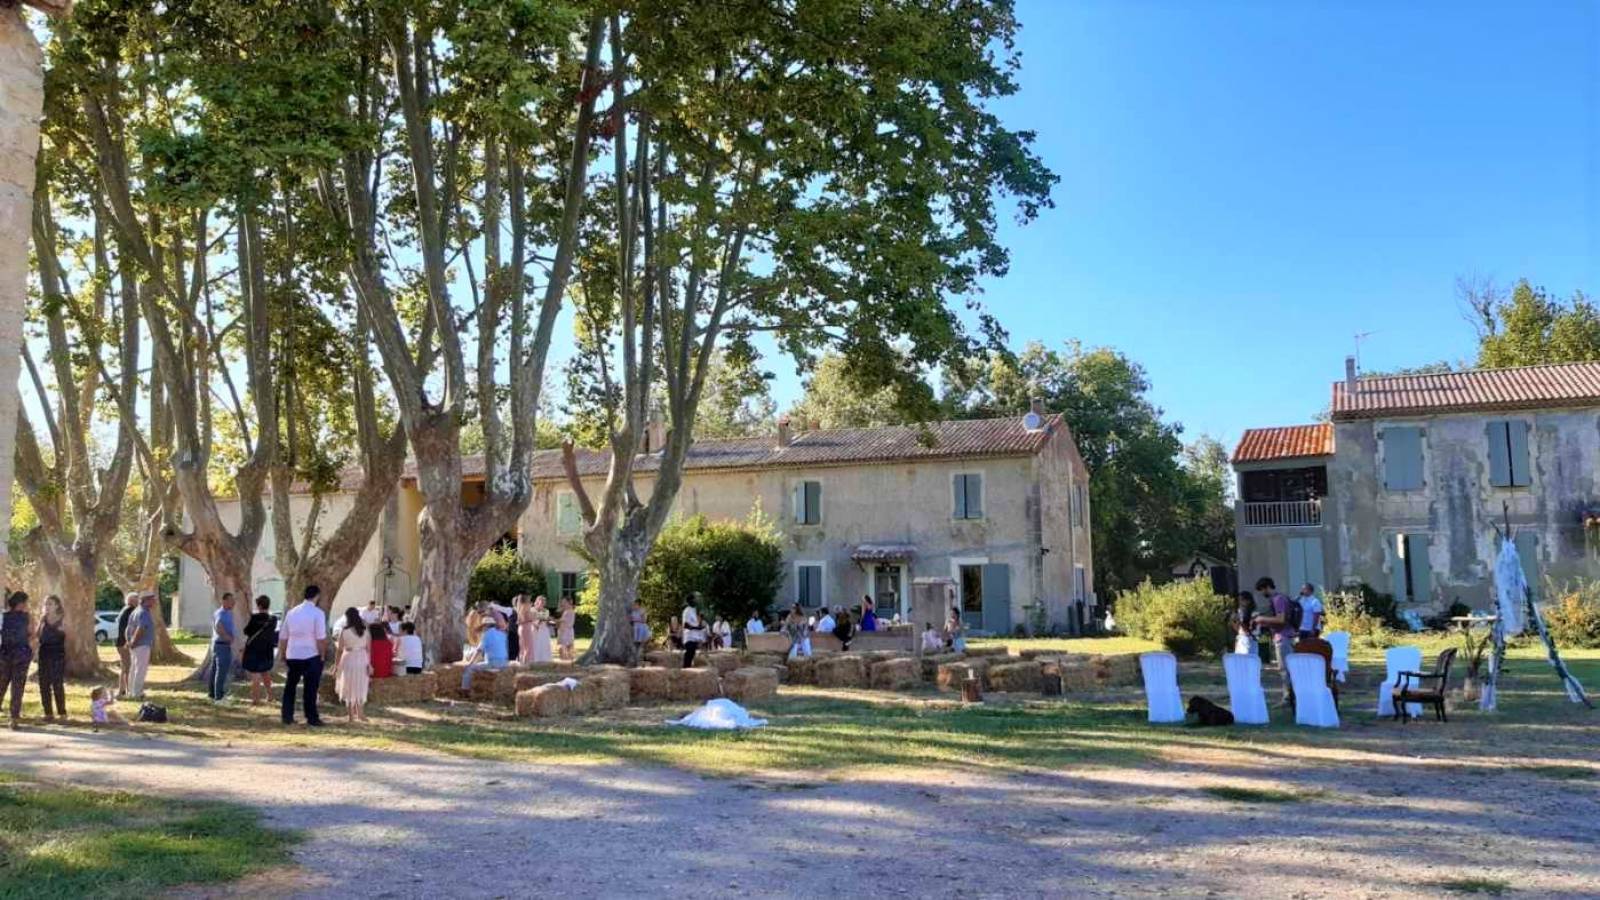 Mariage champêtre en Camargue au mas d’Icard près d’Arles